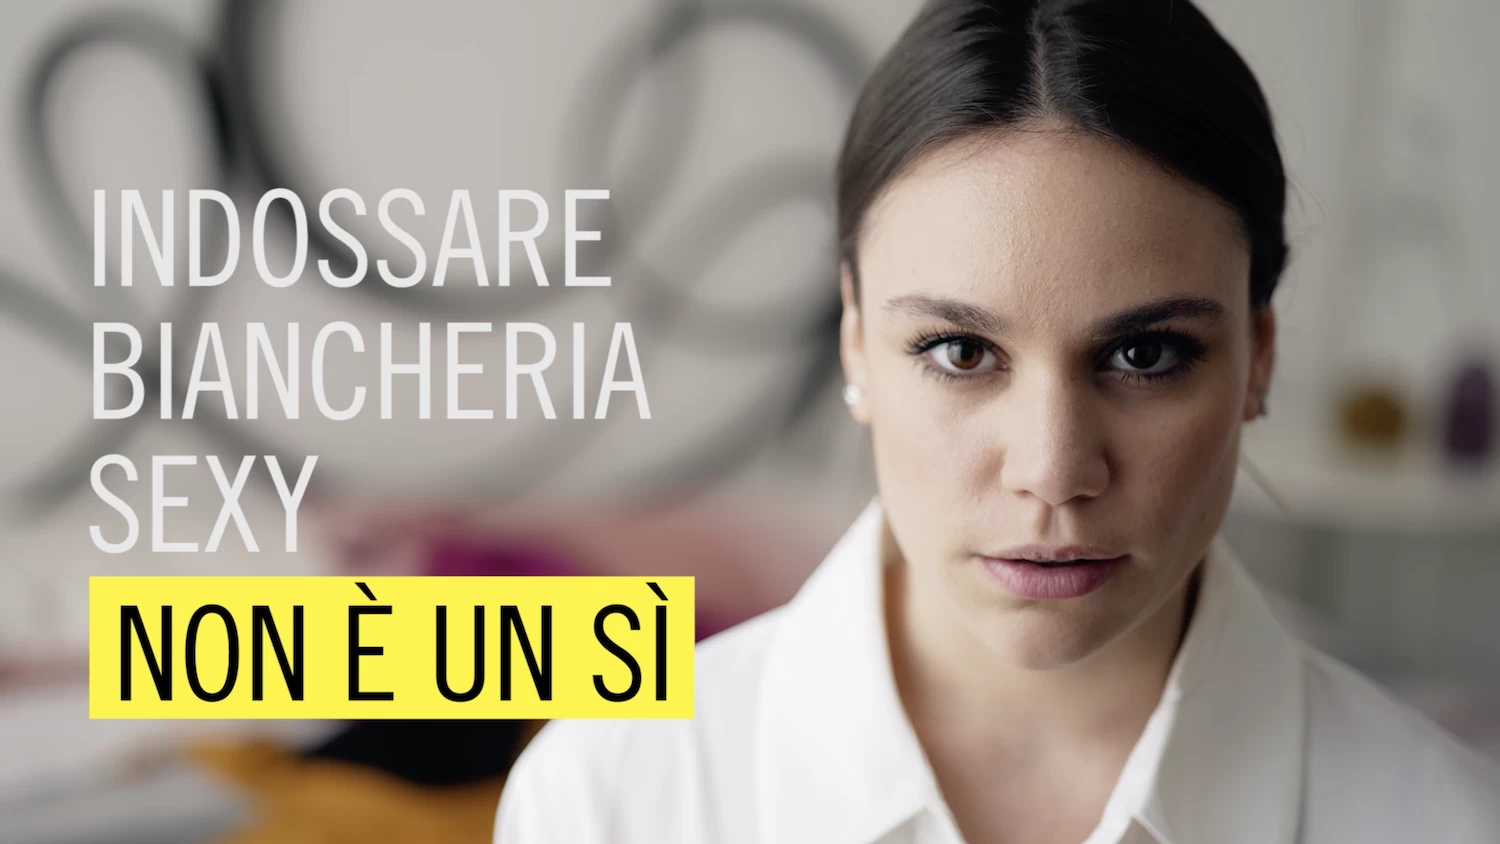 Amnistía Internacional Italia: una ley sobre el consentimiento para combatir la violencia de género